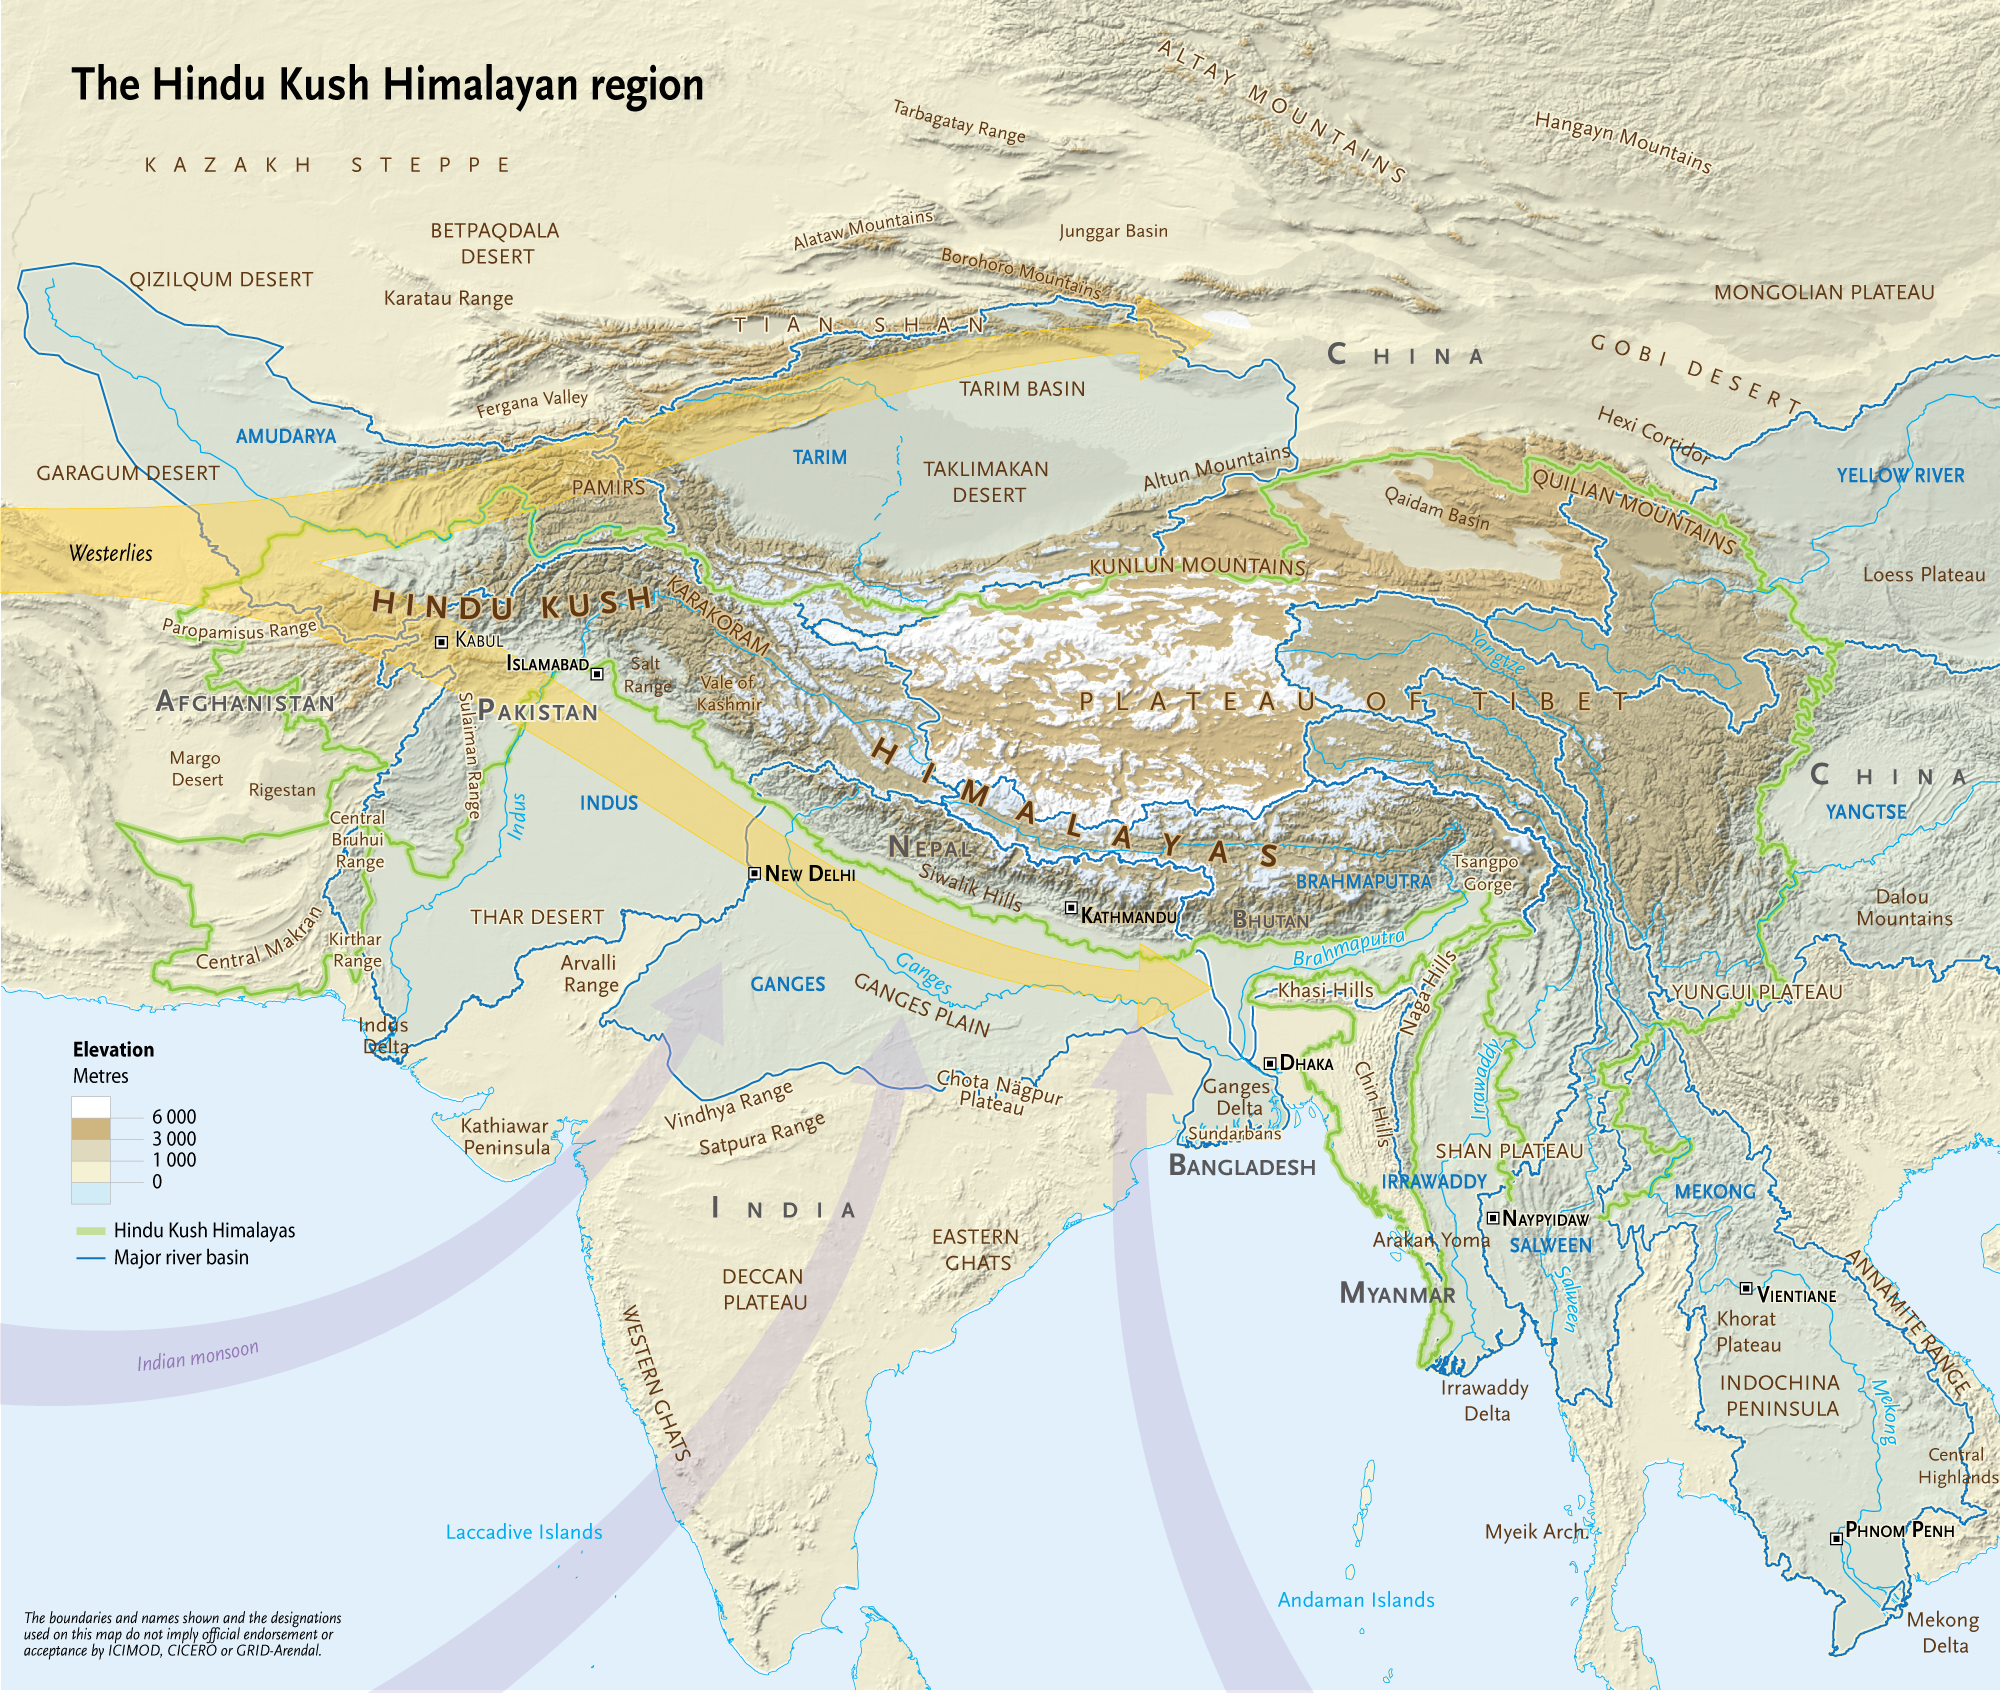 Hindu Kush Himalayan Region, major rivers, and monsoon direction moving northward